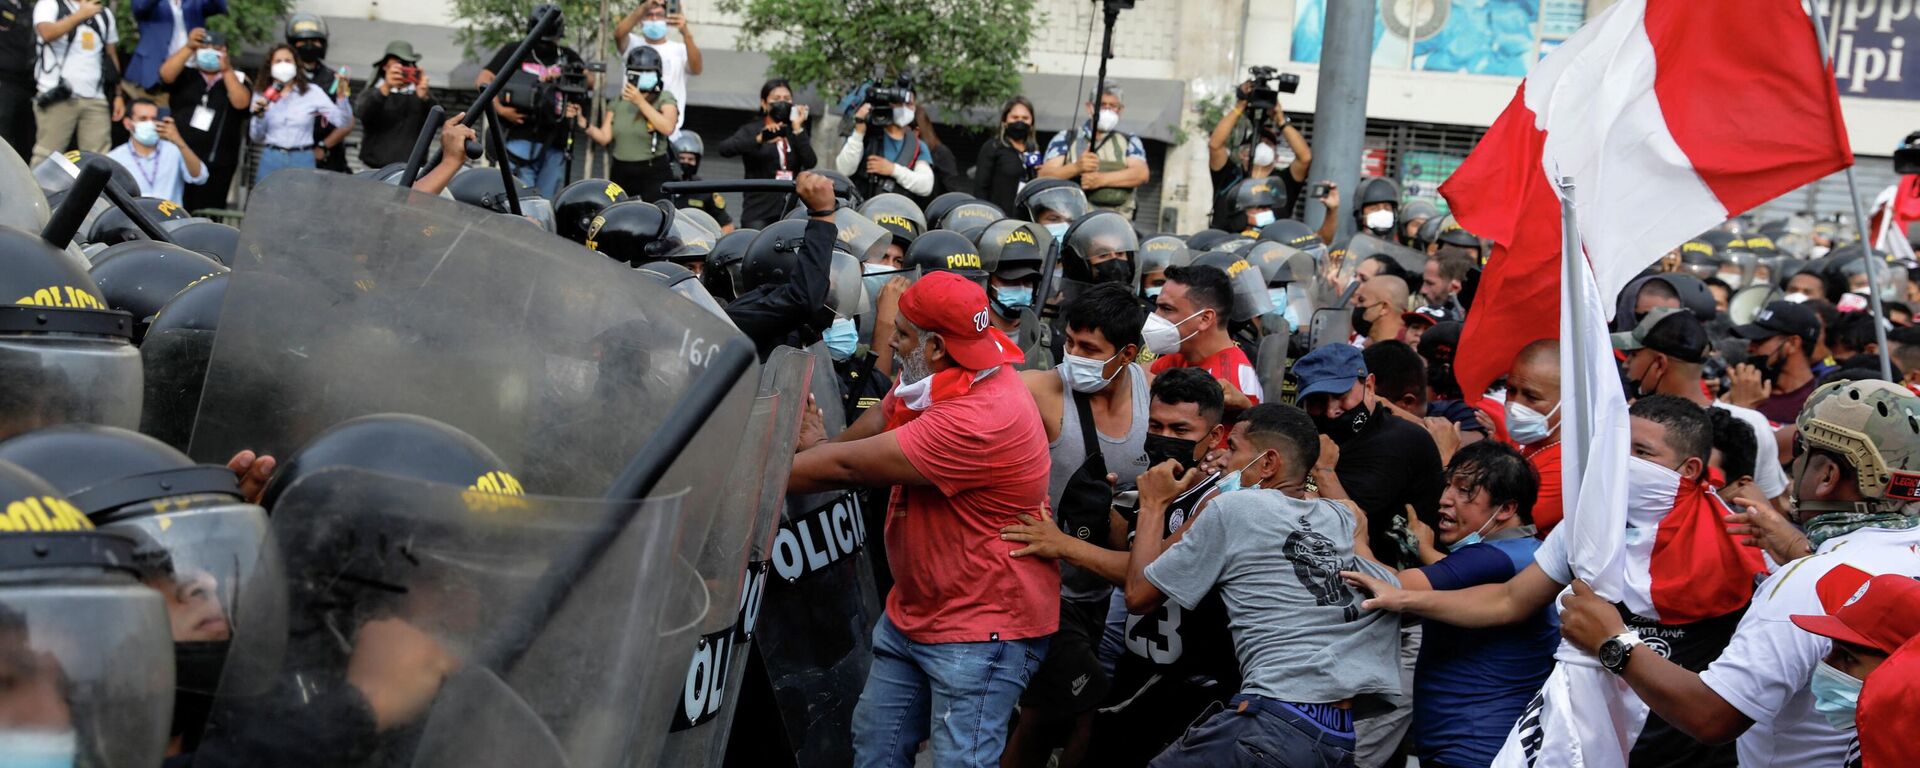 La Policía antidisturbios y los manifestantes se enfrentan durante una protesta contra el presidente de Perú, Pedro Castillo, en Lima, Perú, el 5 de abril de 2022 - Sputnik Mundo, 1920, 06.04.2022